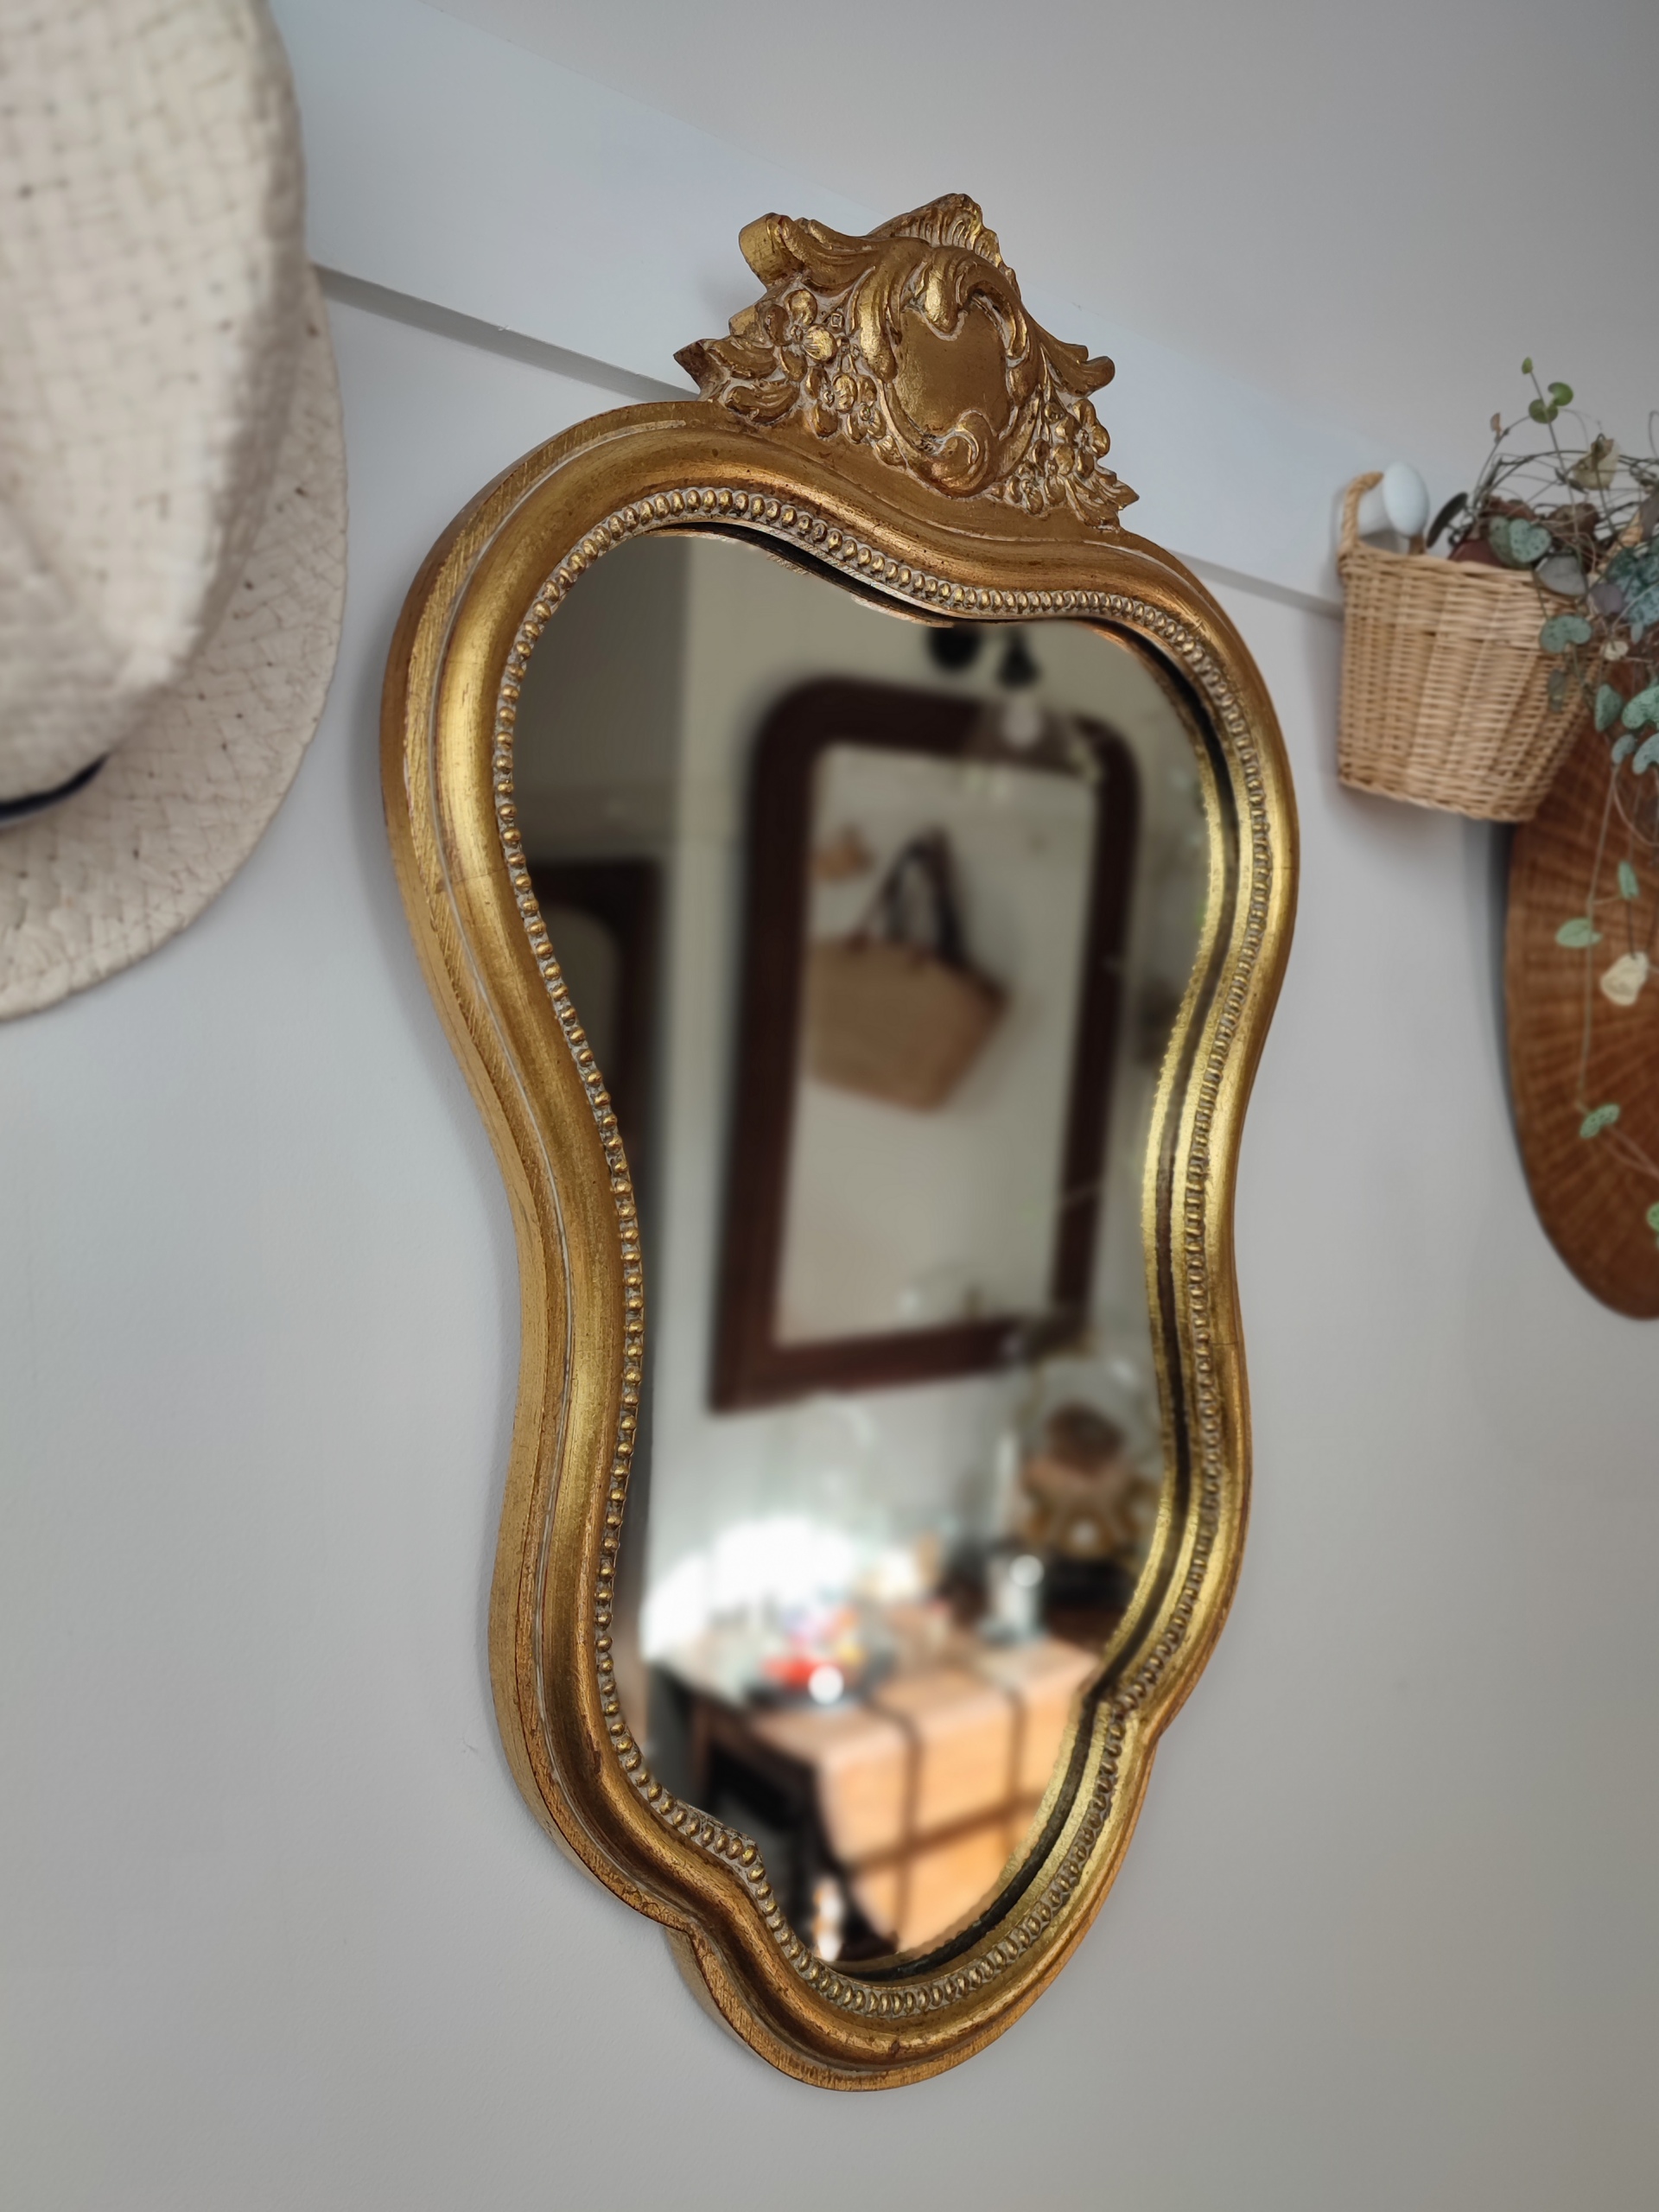 Miroir baroque "Yvette" en bois mouluré, finition doré patiné avec un joli fronton sculpté à son sommet. Inscription Noël 1968 au dos du miroir. Chapeau de paille. Plante verte.